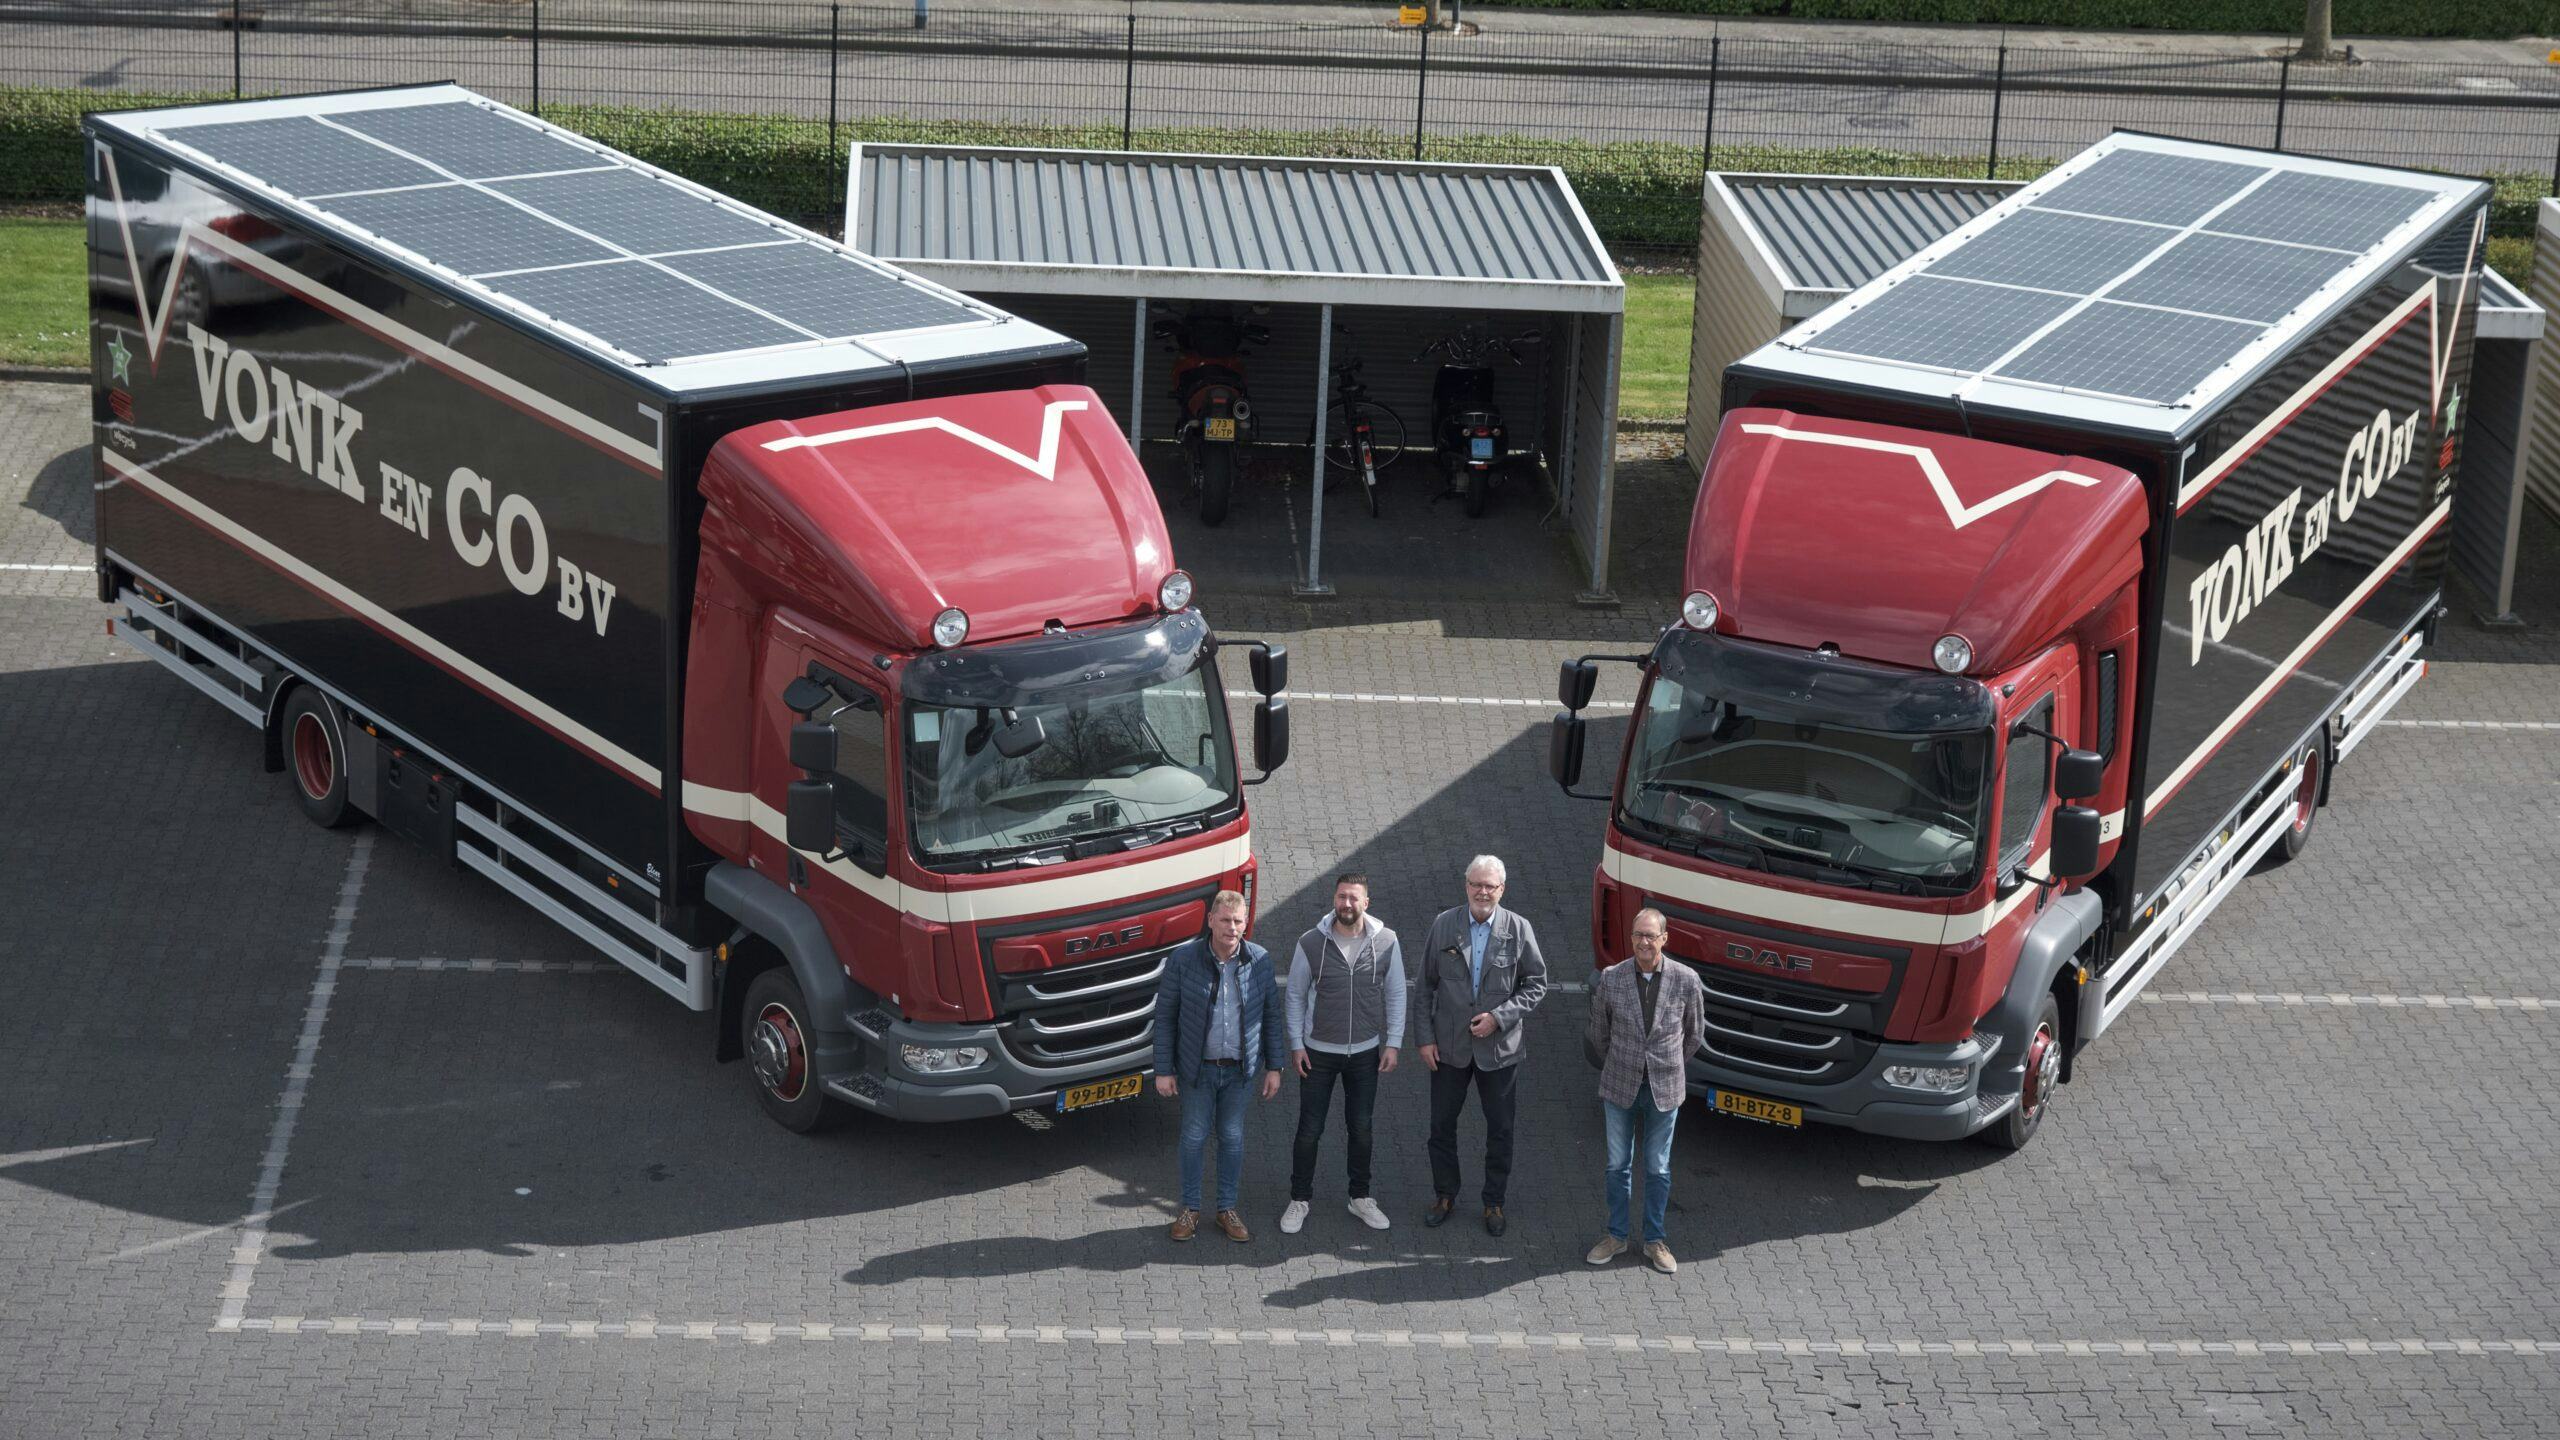 Vonk&Co bezorgt witgoed met zonnepanelen op vrachtwagens